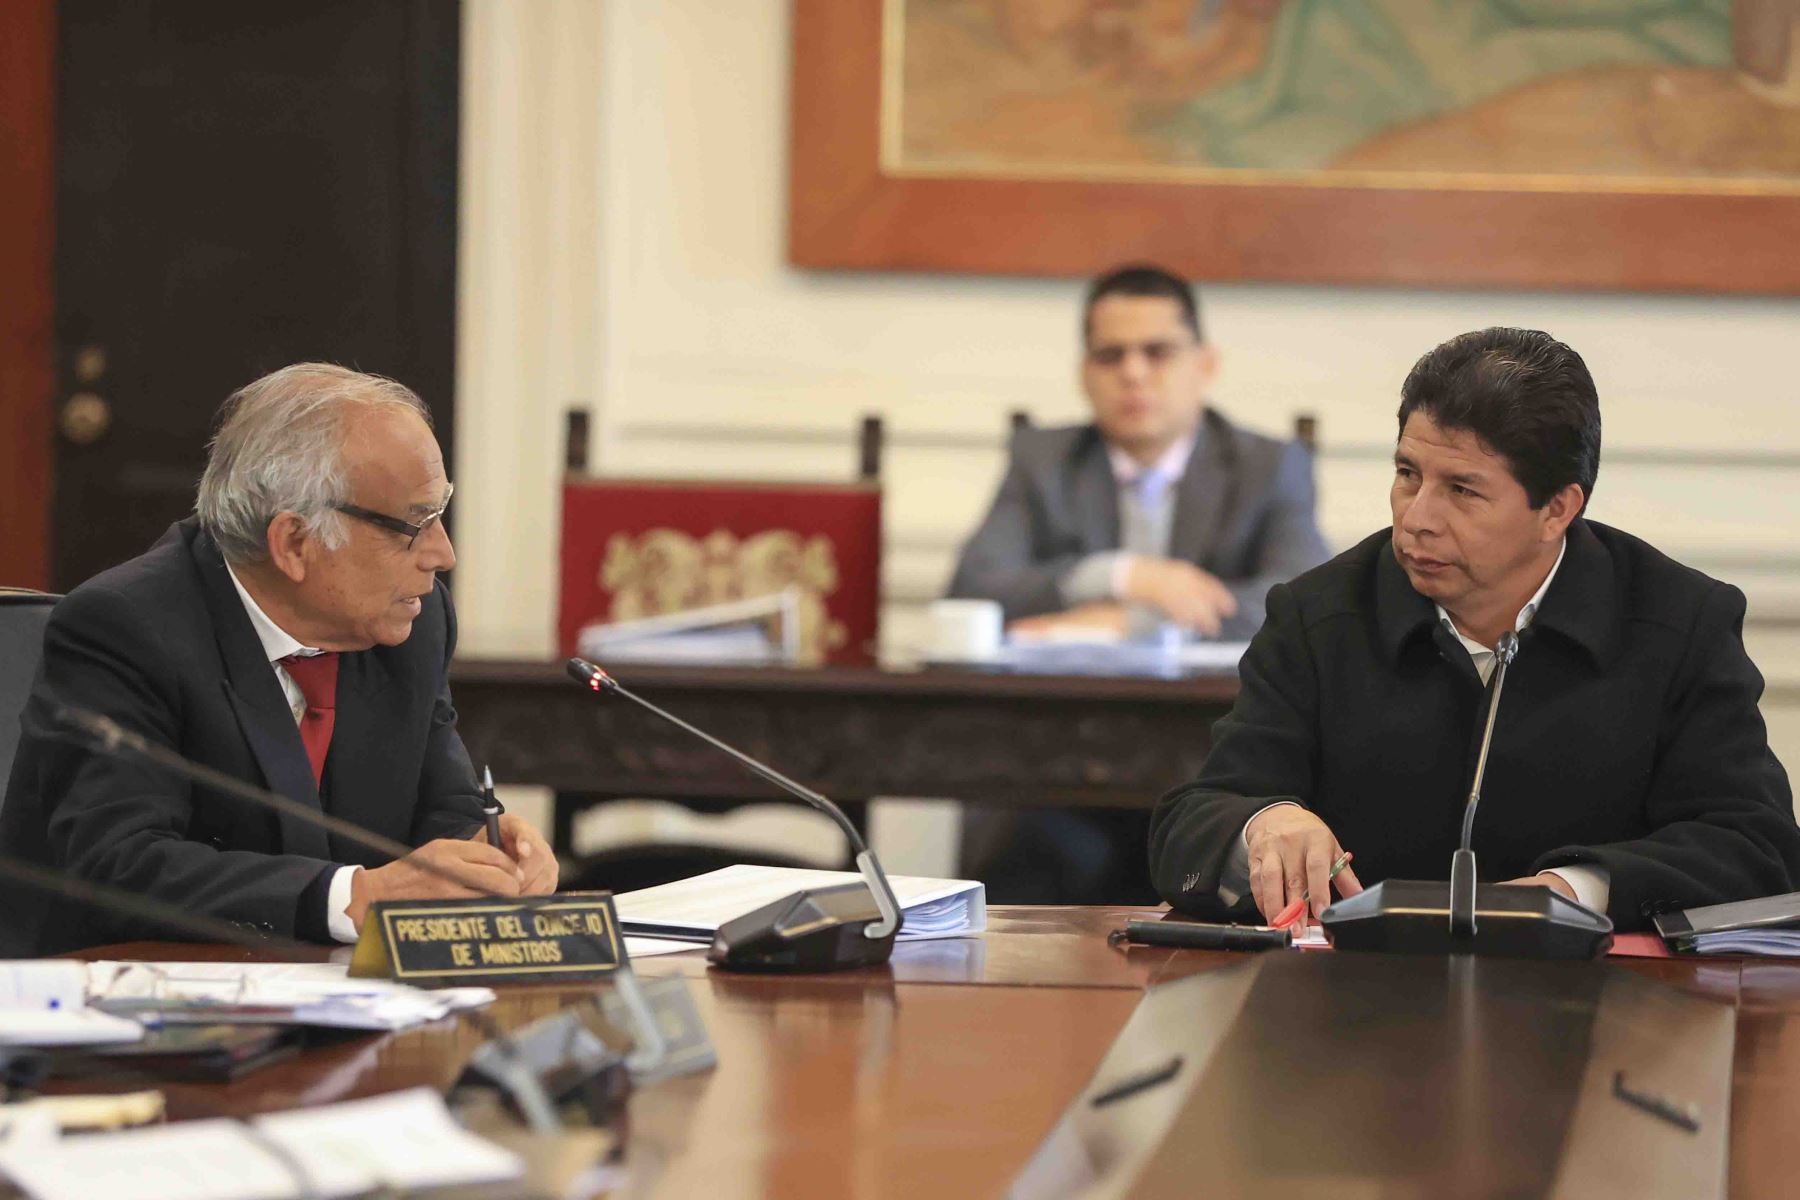 PCM explicó por qué excluyó a la prensa peruana de conferencia: “El objetivo era dirigirse a la comunidad internacional”